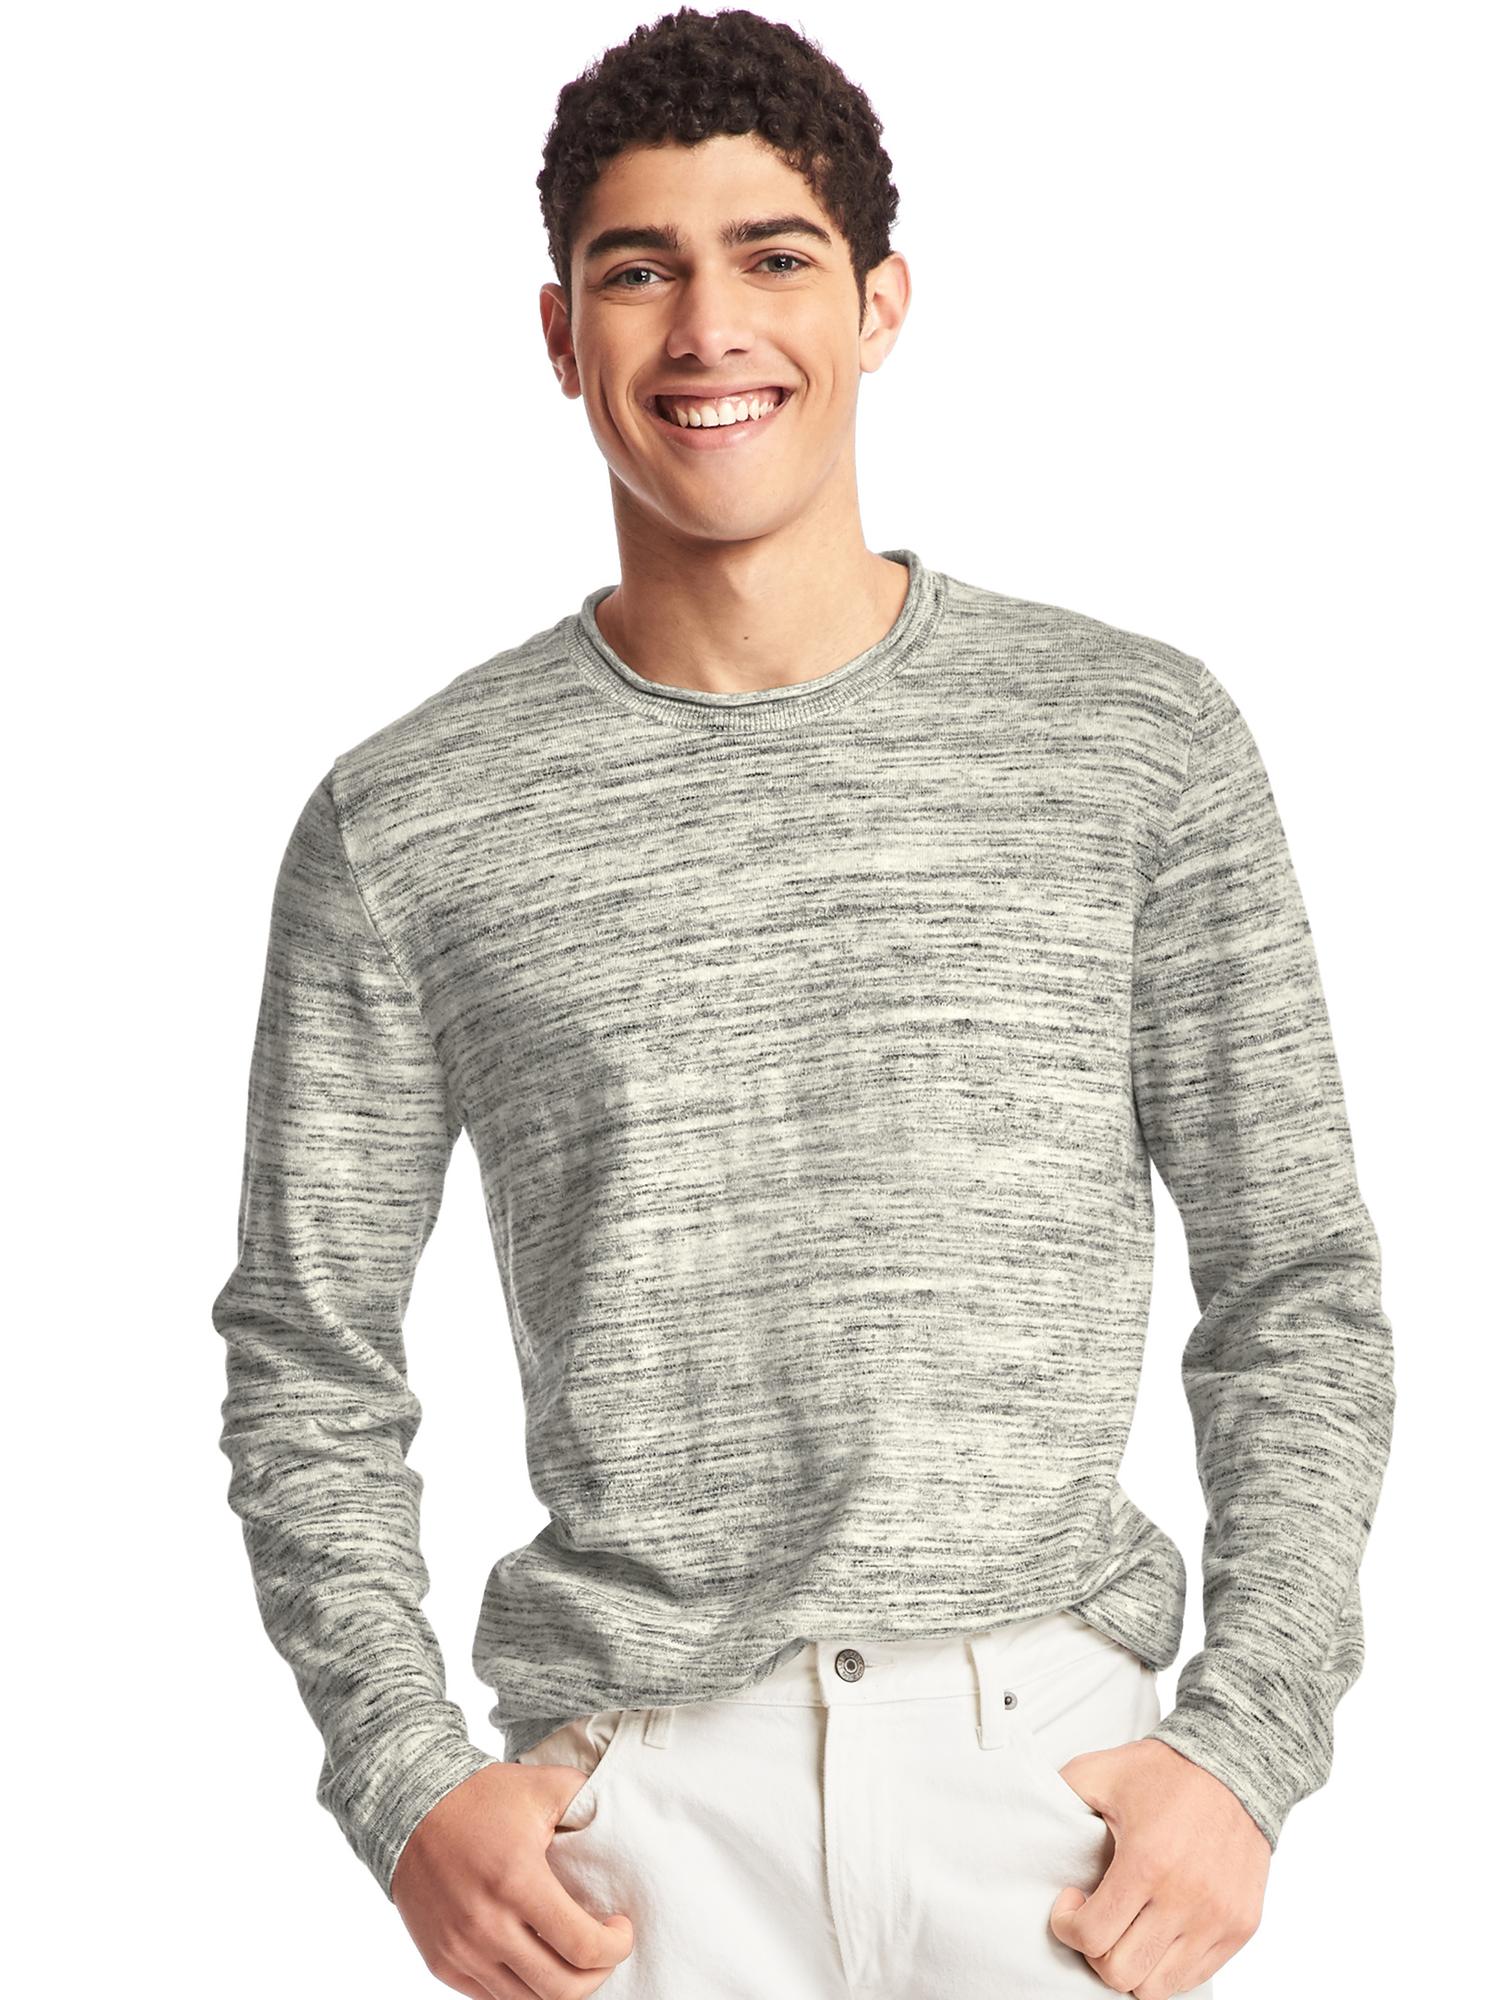 Spacedye roll-neck sweater | Gap